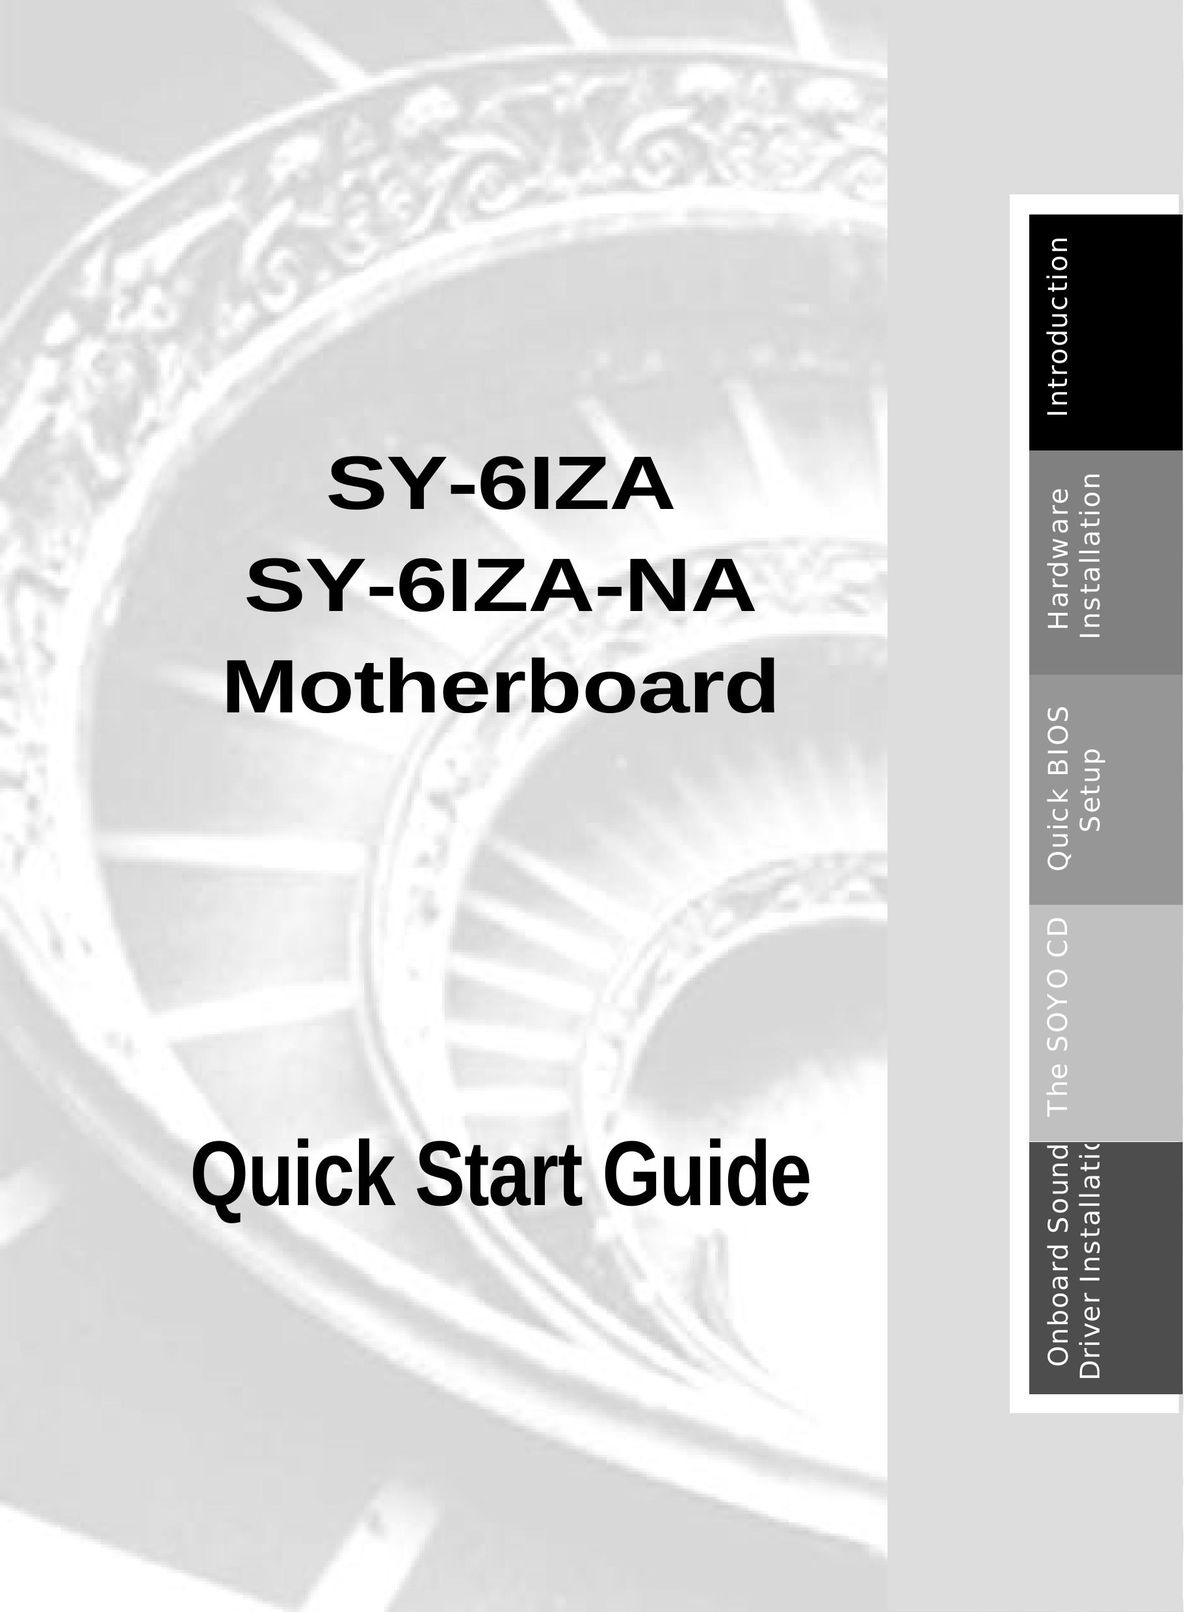 SOYO SY-6IZA-NA Computer Hardware User Manual